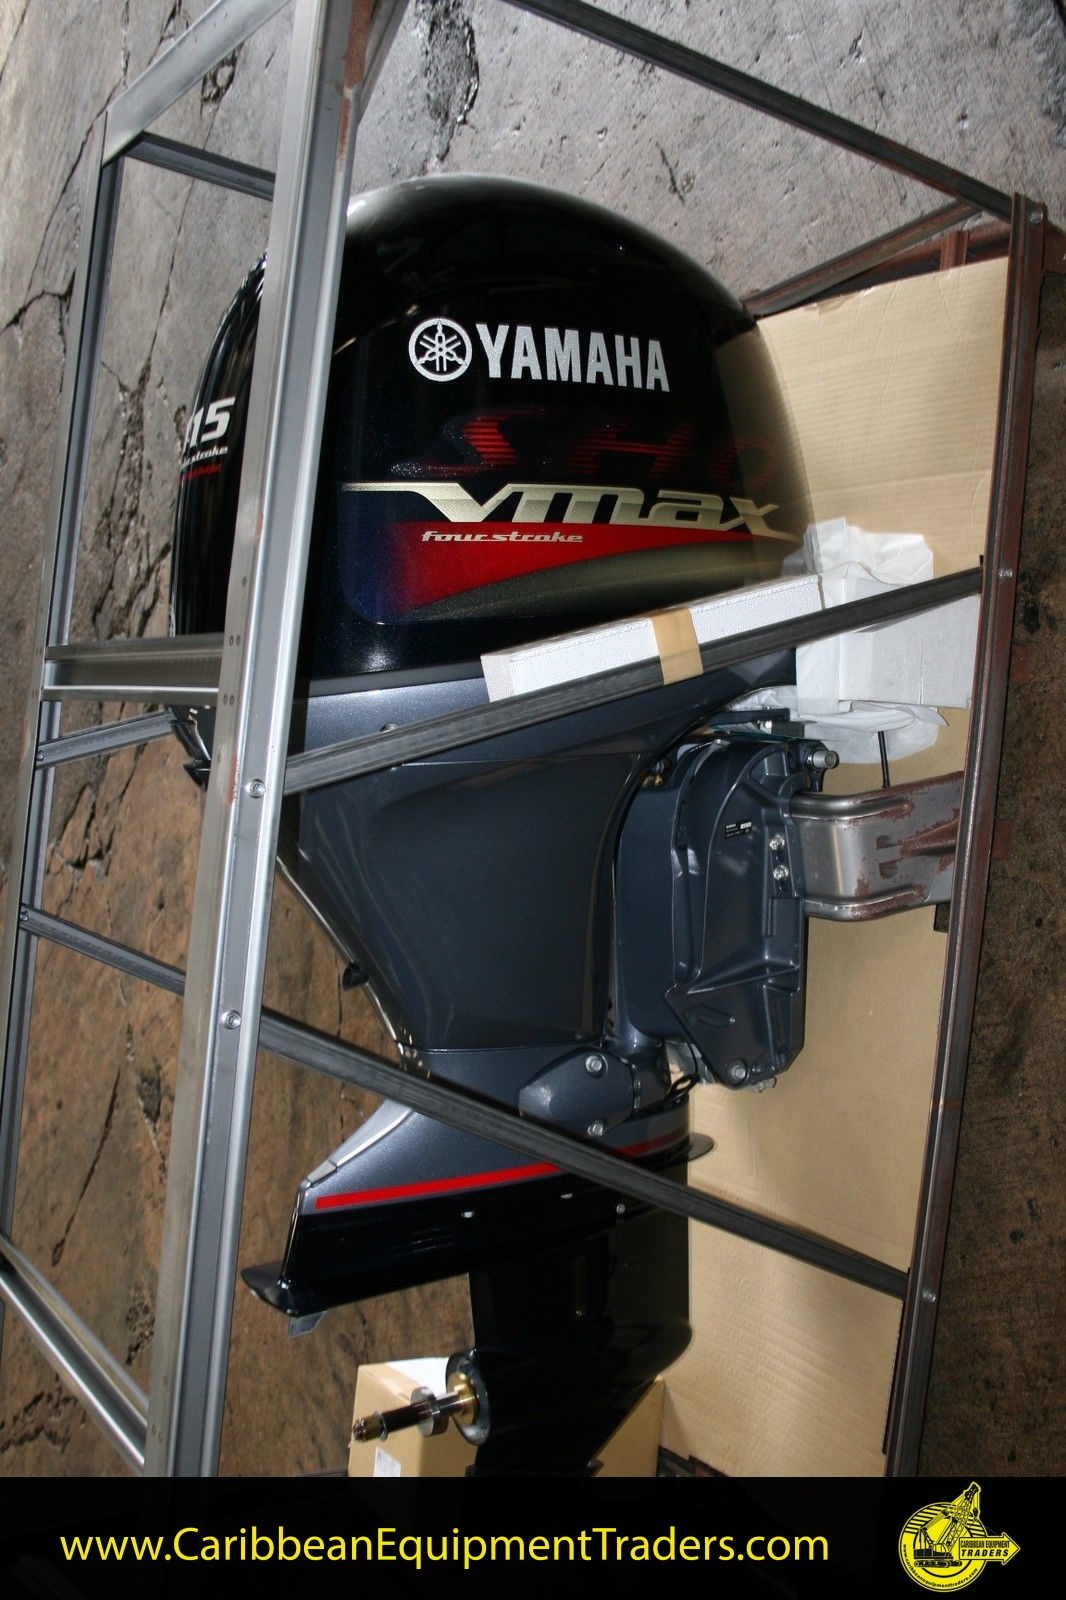 yamaha outboard motors